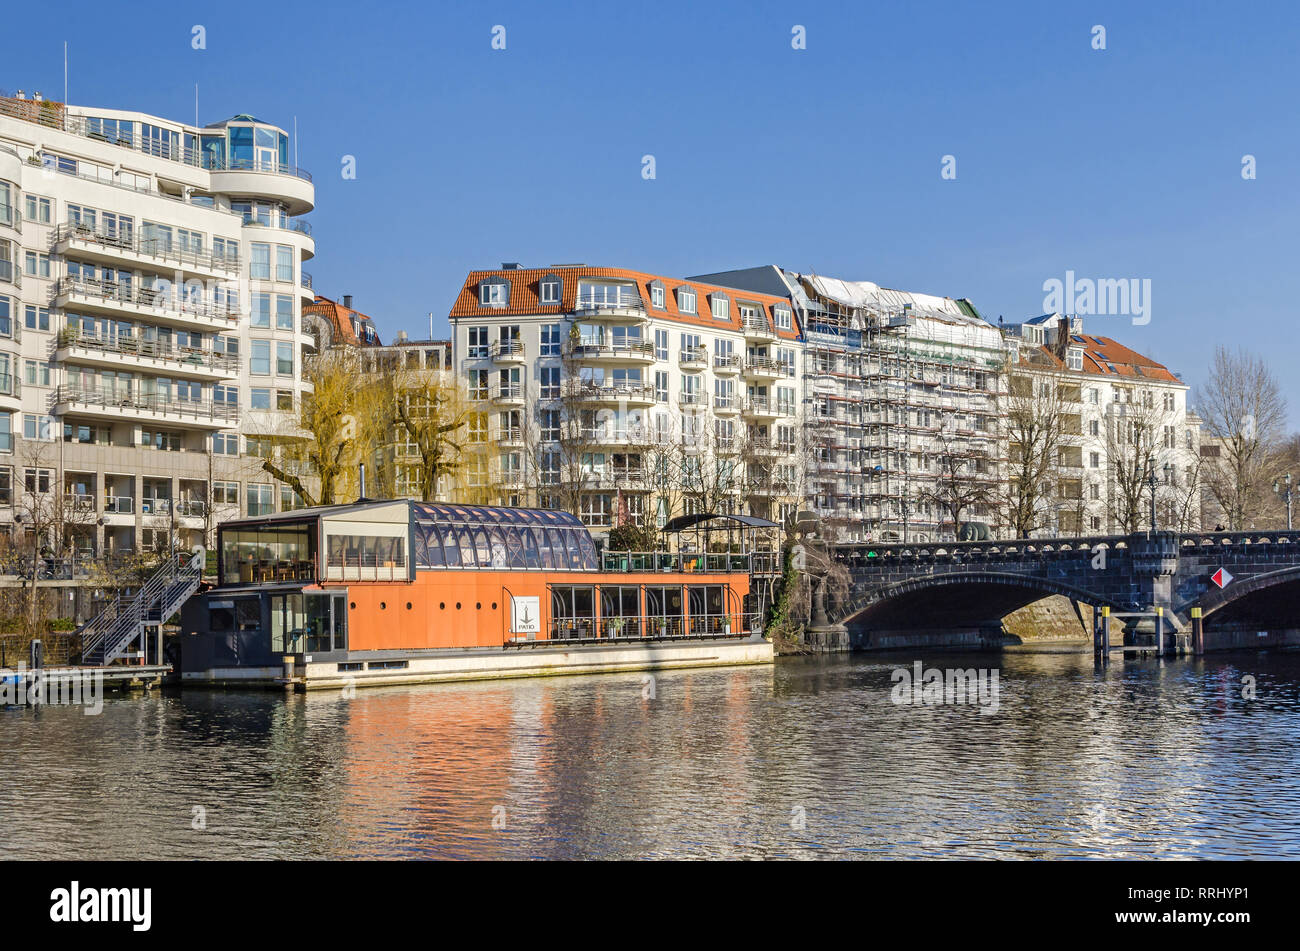 Berlin, Deutschland - 14. Februar 2019: Spree damm Helgolaender Ufer mit dem Moabiter Brücke und dem neu gestalteten Bereich Spree-Bogen Stockfoto